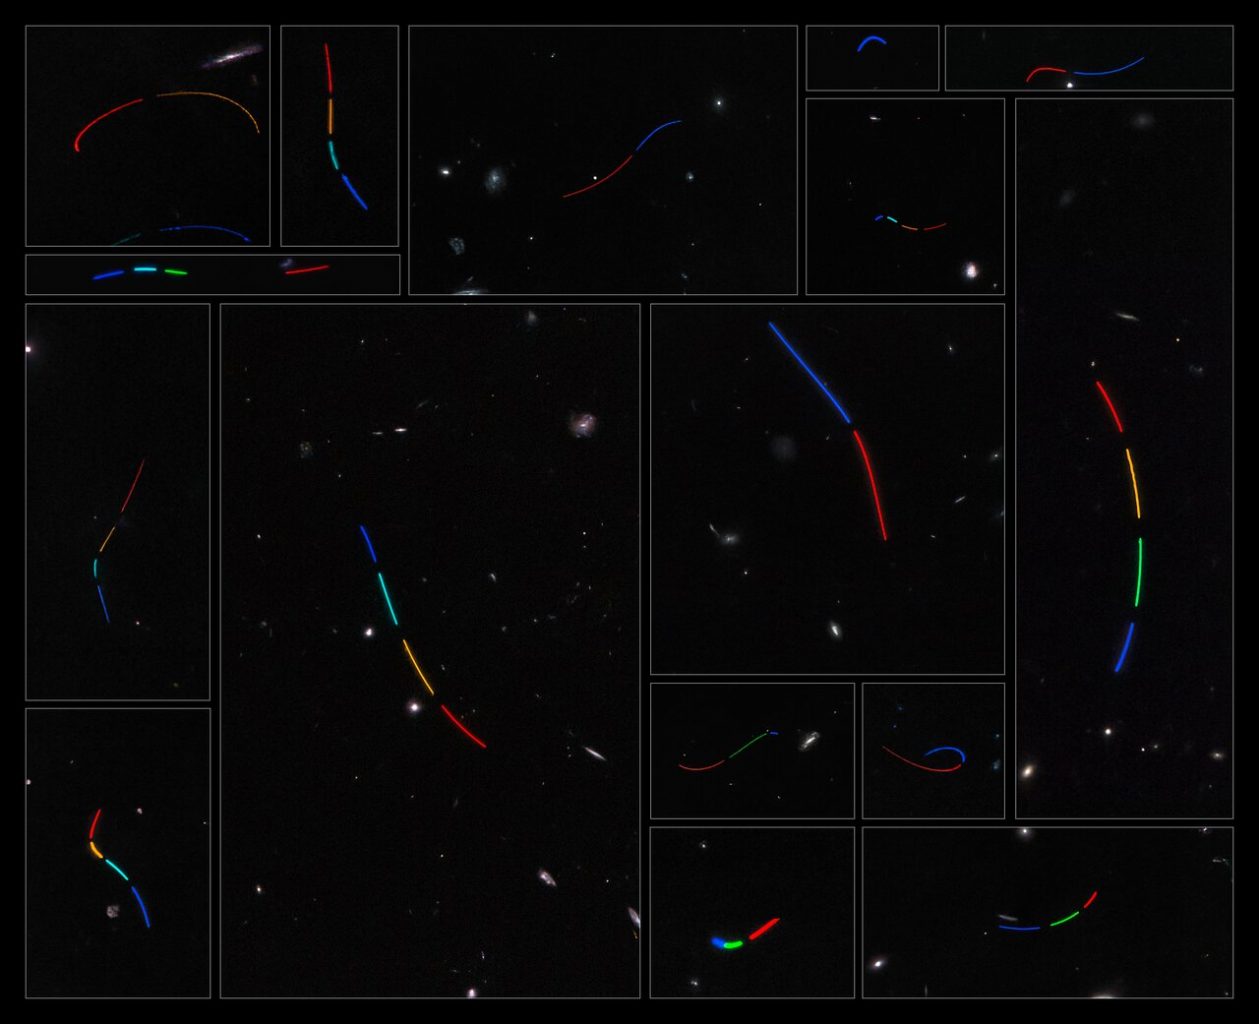 Несколько следов астероидов в архивных данных телескопа Хаббл. Предоставлено: Сандор Крук и др. / Астрономия и астрофизика, 2022 г.